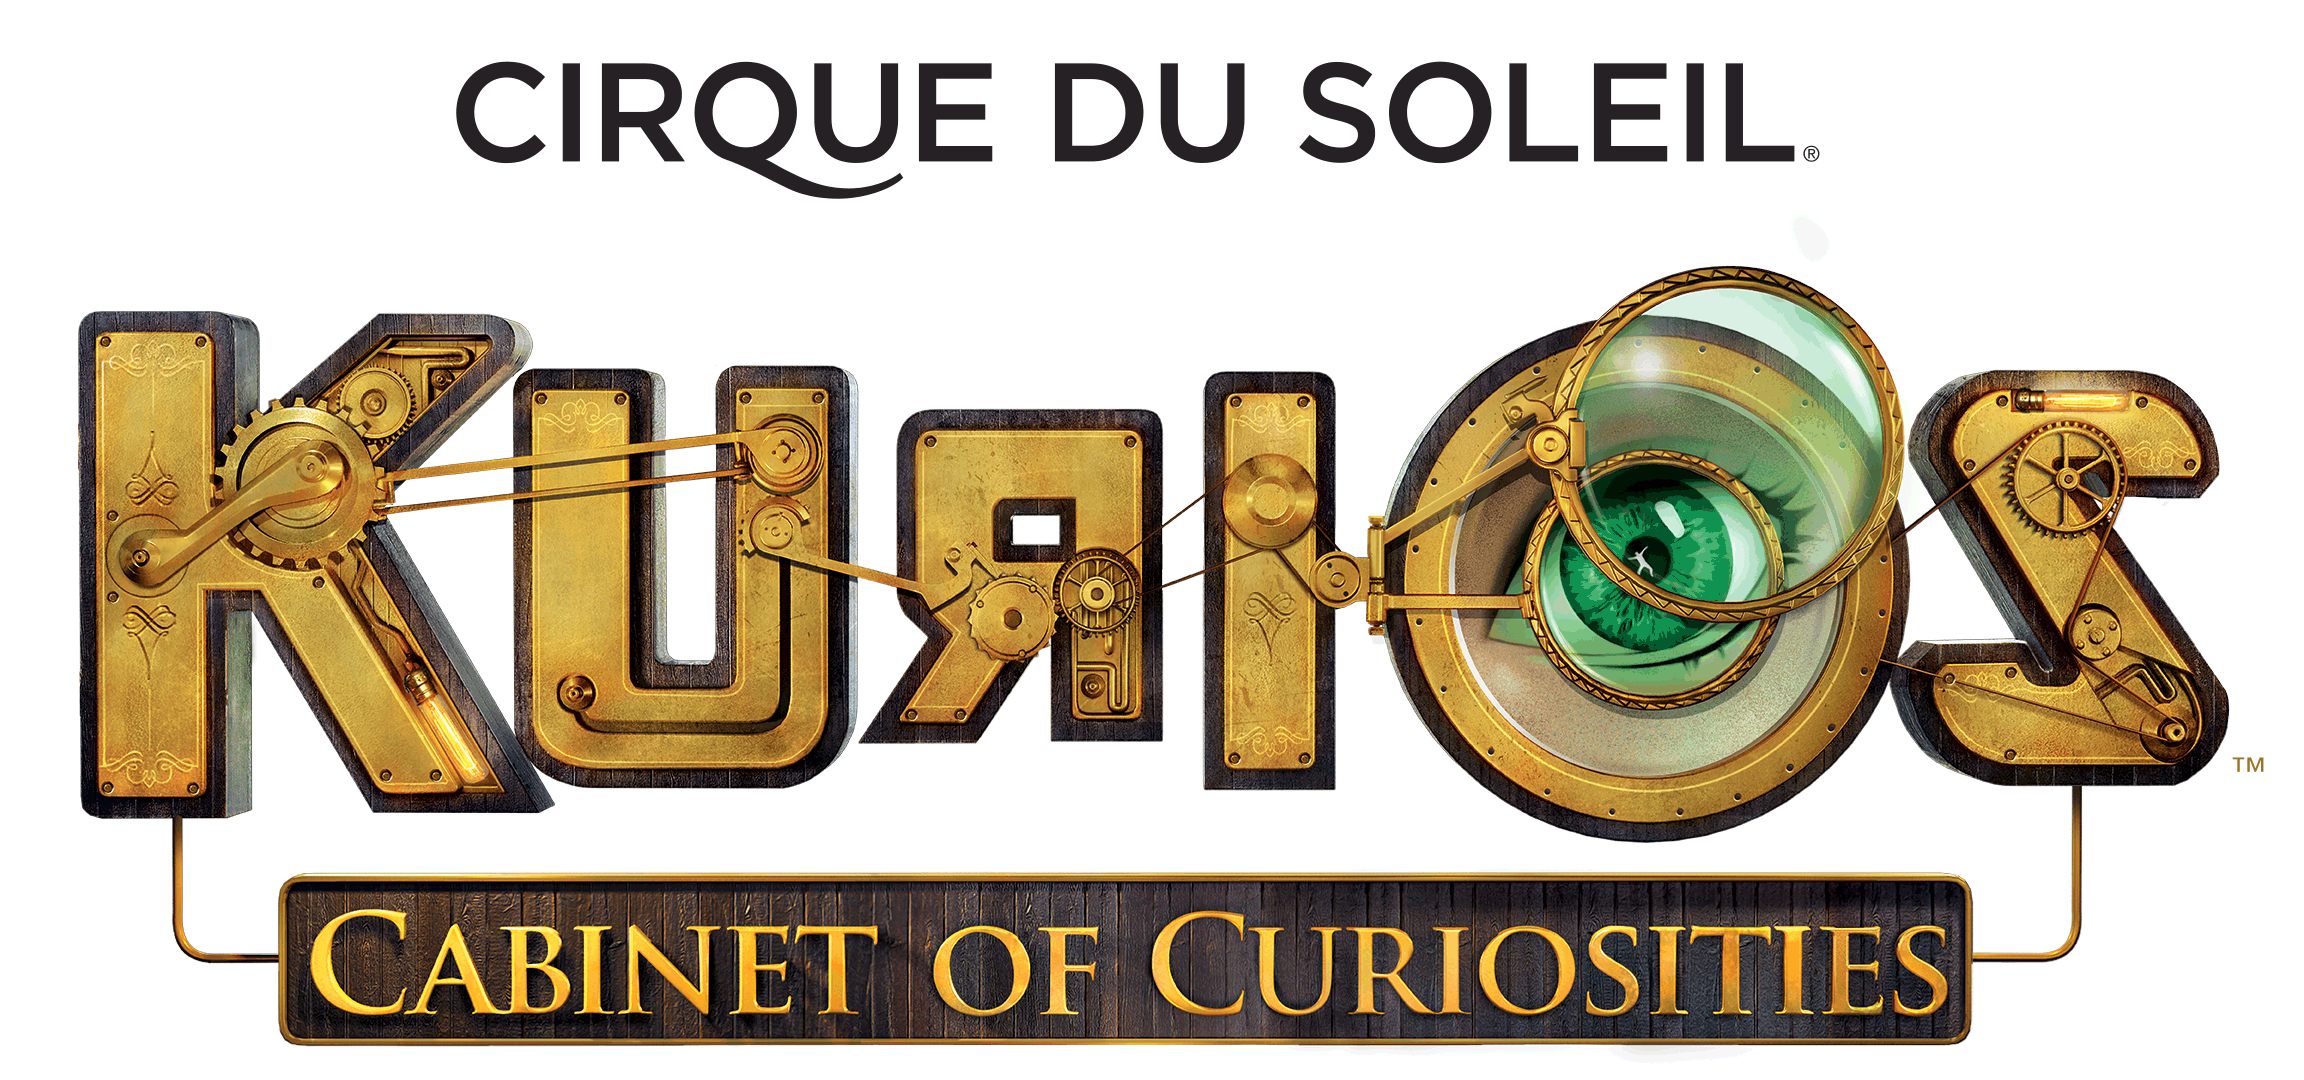 We have your Cirque du Soleil tickets!